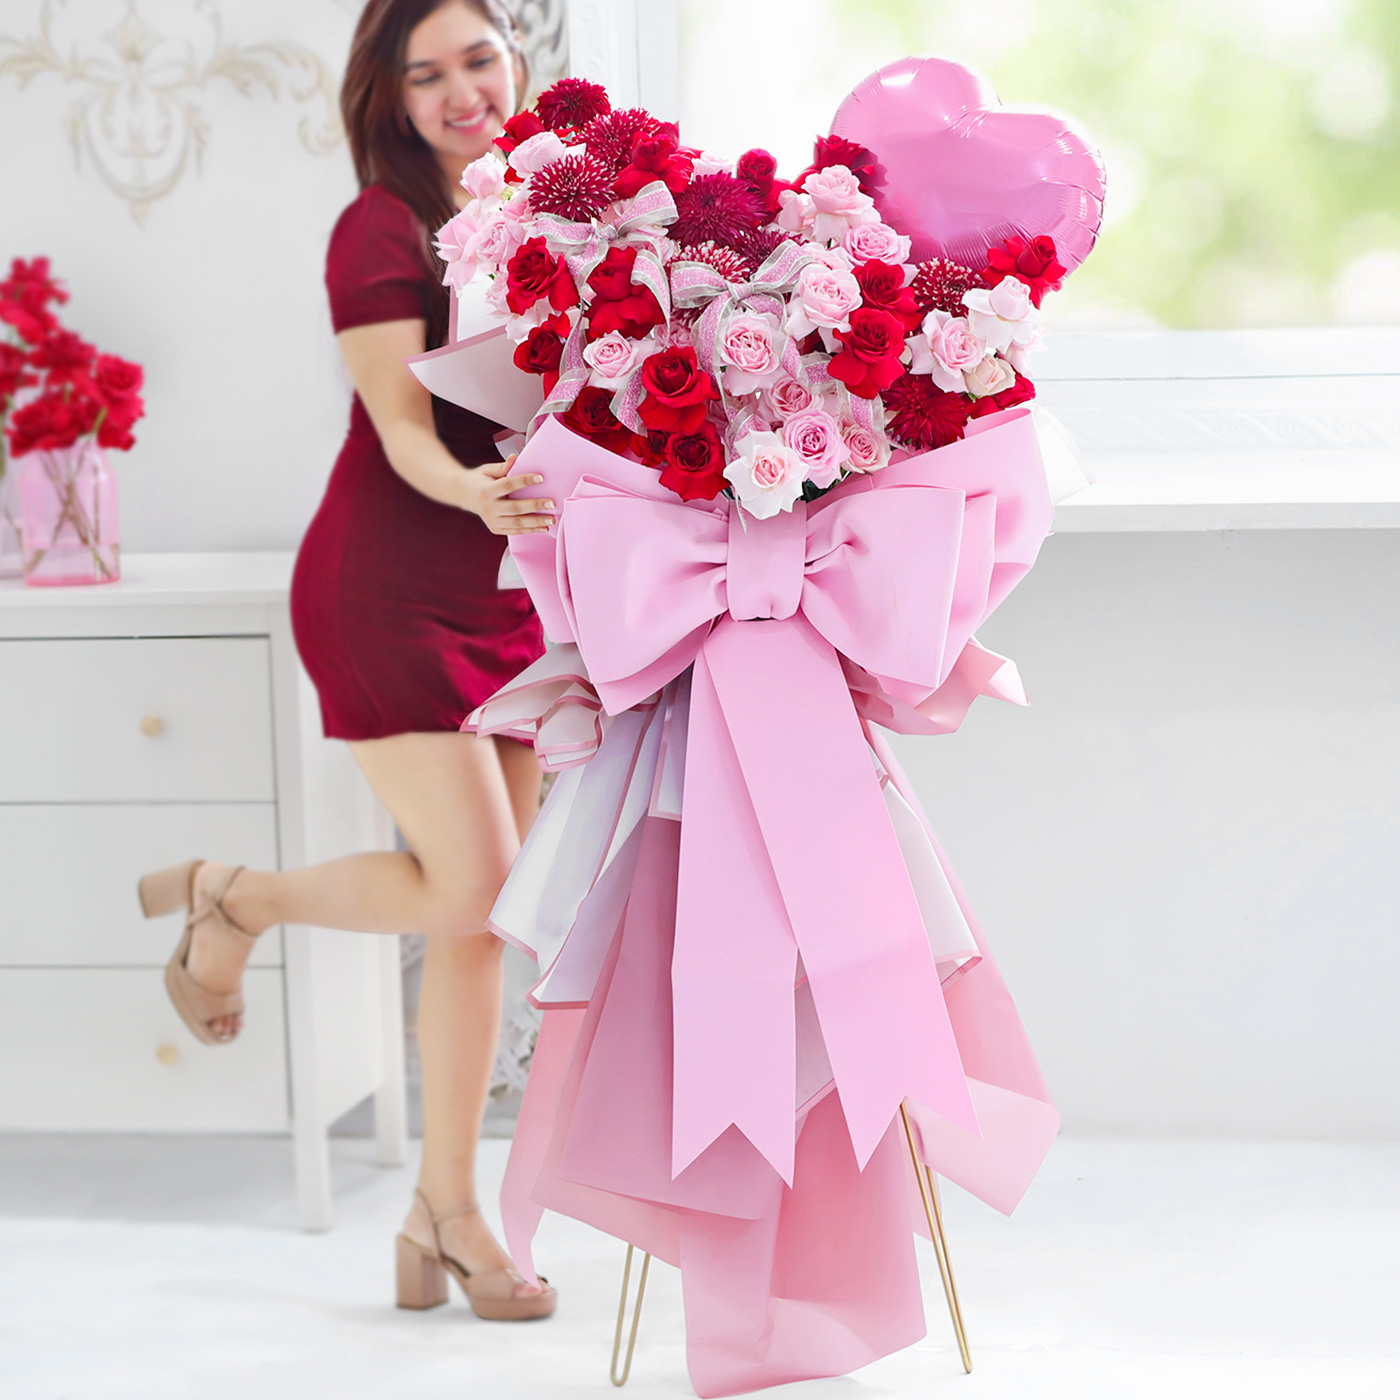 Valentine's Day Red & Pink Flower Arrangement